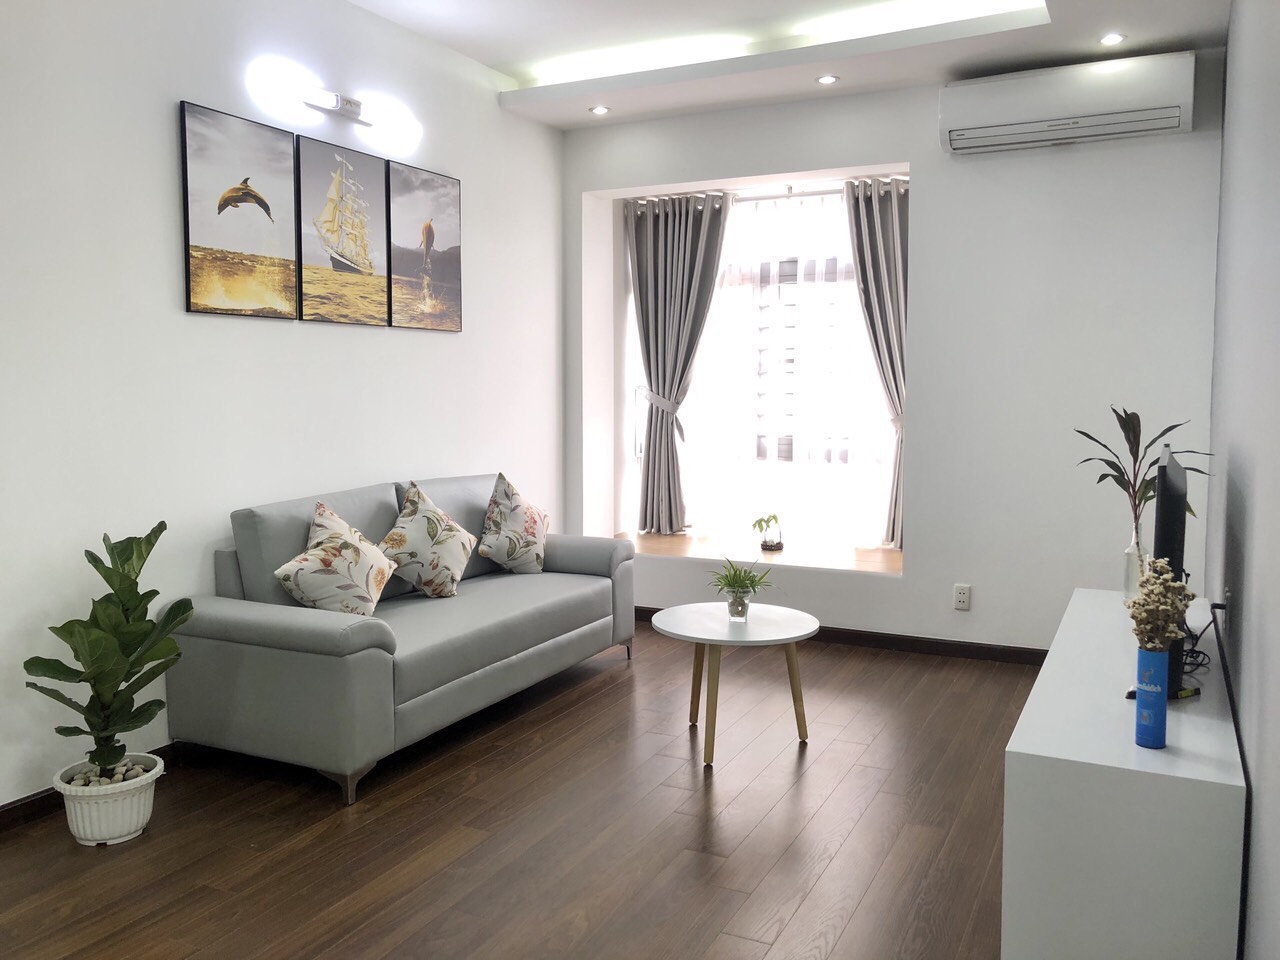 Cần cho thuê nhanh Căn hộ Sky Garden 3, Phú Mỹ Hưng, 2PN nhà đẹp đầy đủ nội thất mới, lầu cao giá 10 triệu/tháng.